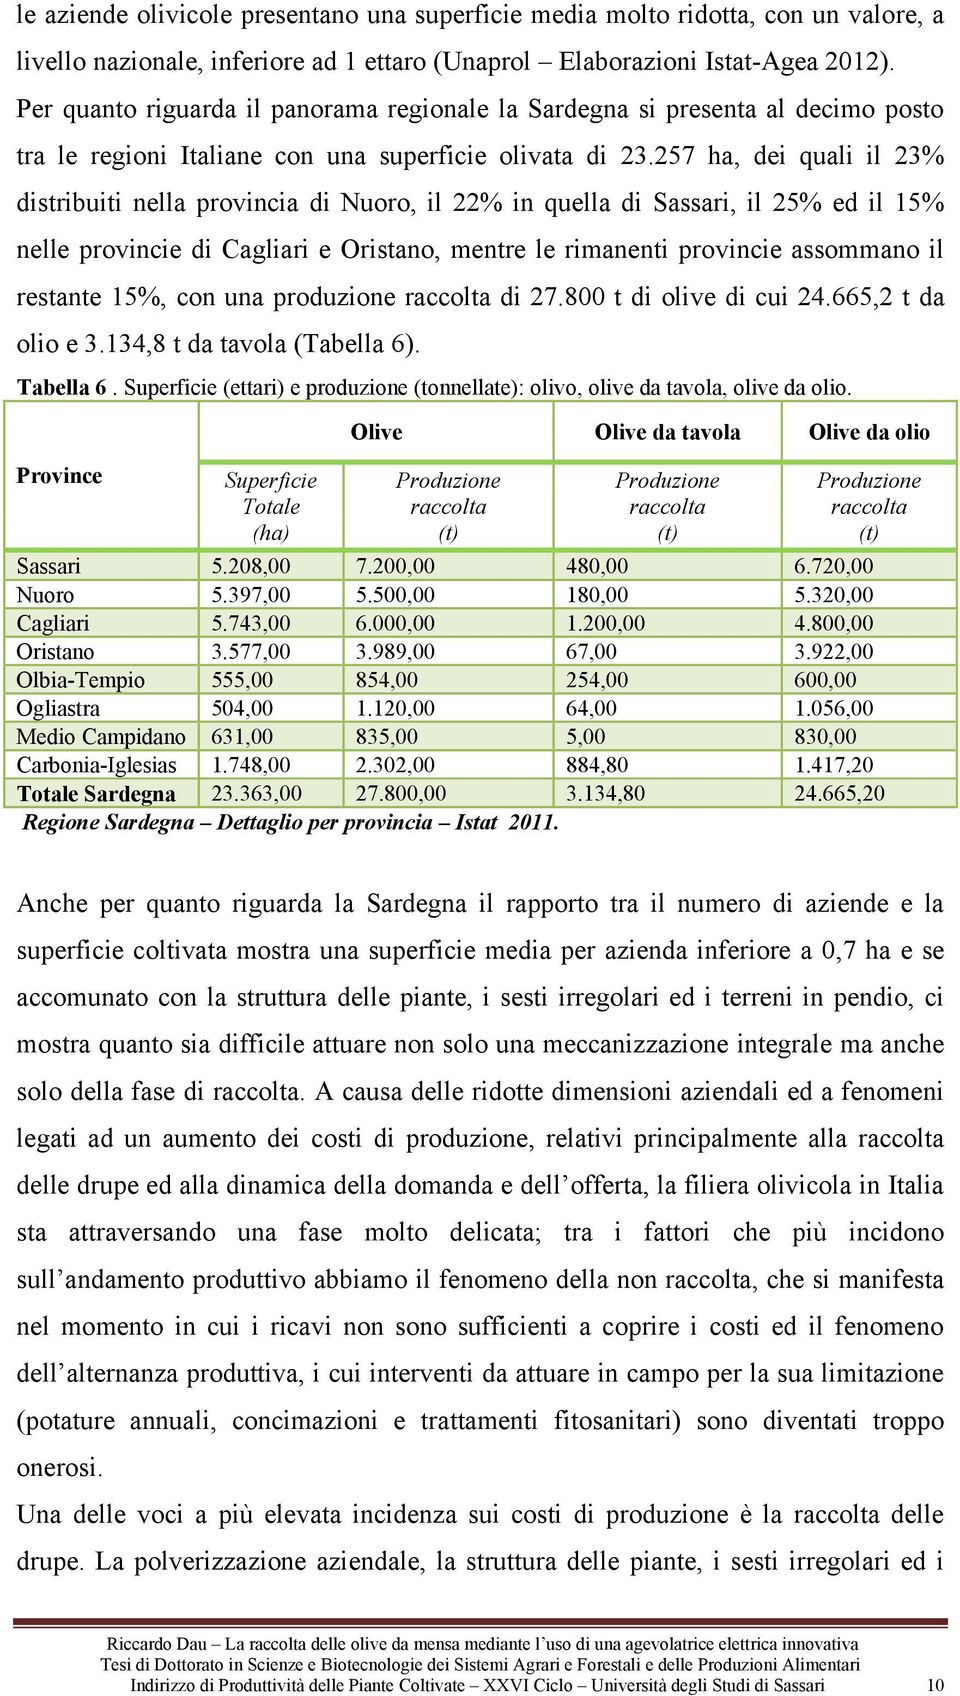 257 ha, dei quali il 23% distribuiti nella provincia di Nuoro, il 22% in quella di Sassari, il 25% ed il 15% nelle provincie di Cagliari e Oristano, mentre le rimanenti provincie assommano il